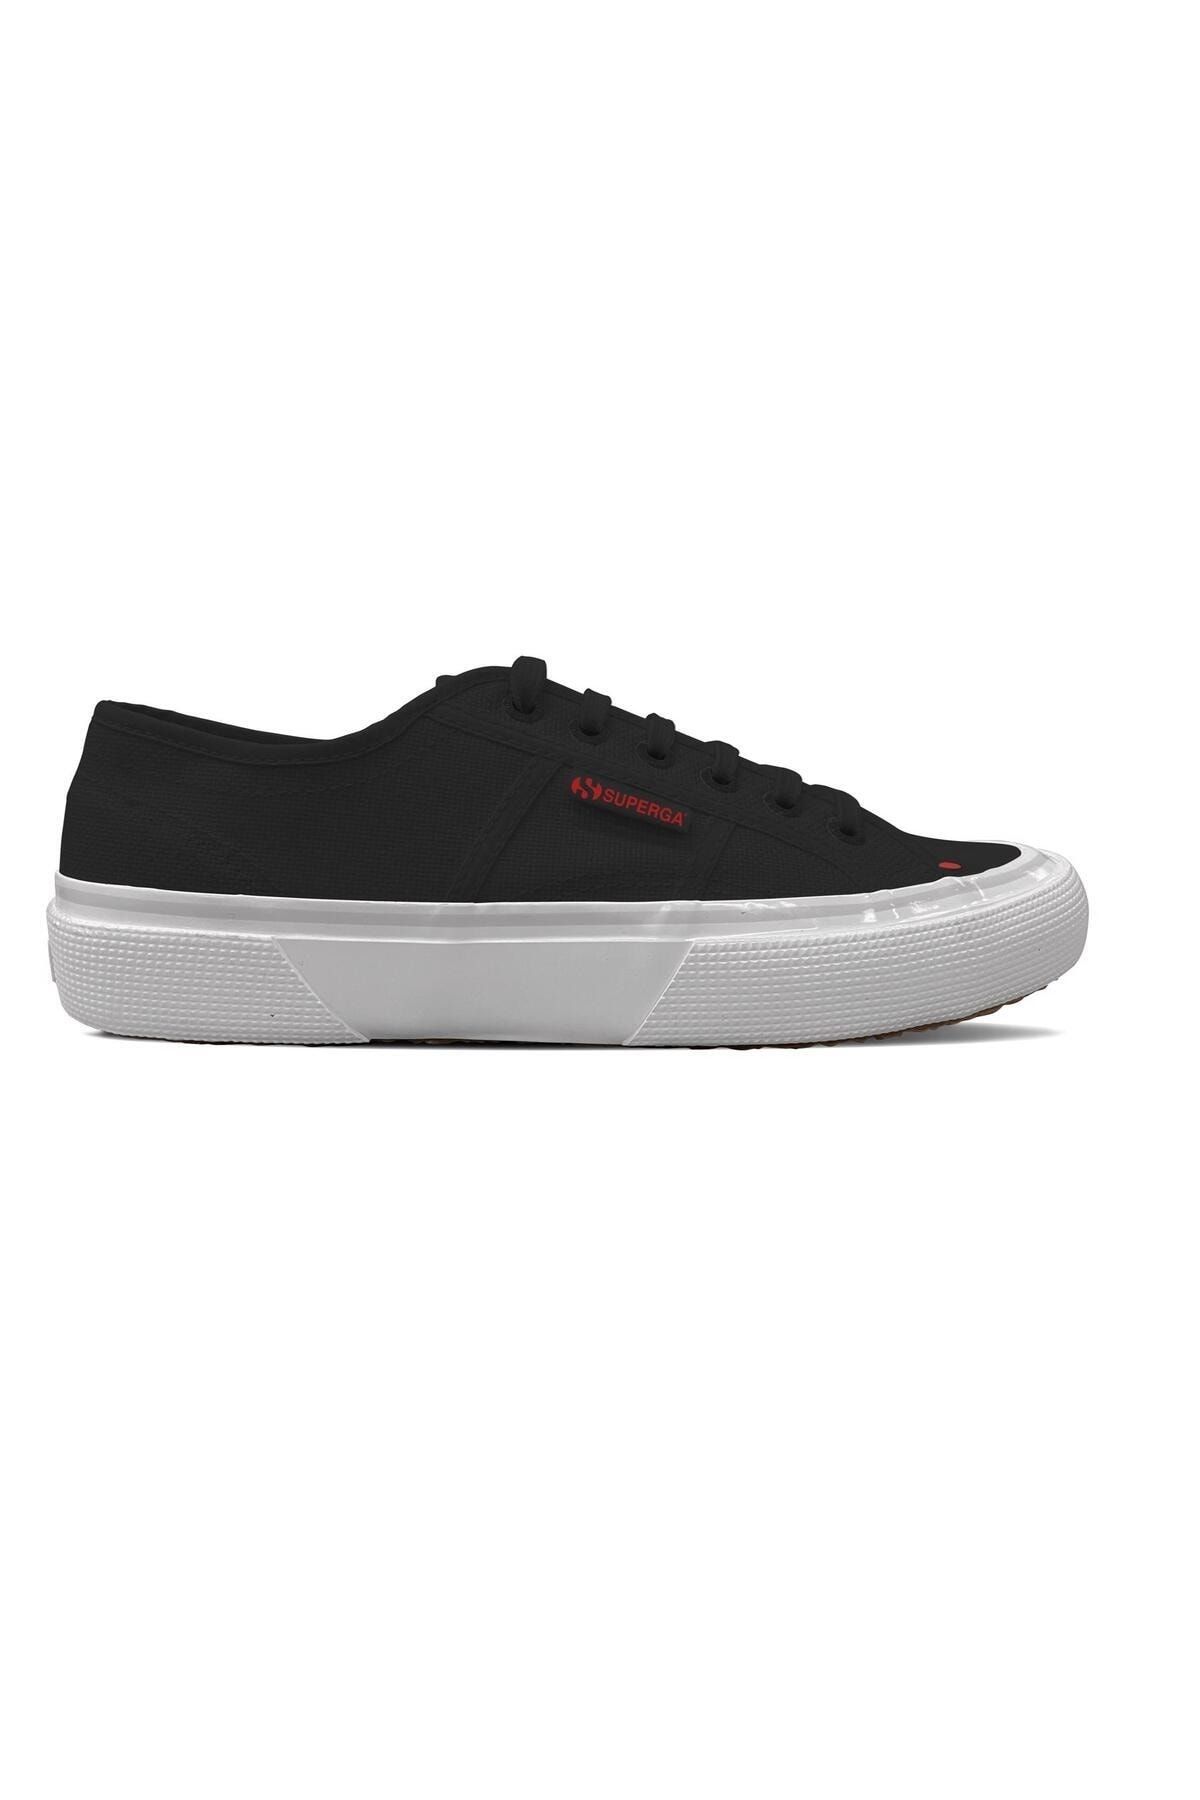 Superga 2490 Bold Unisex Siyah - Kırmızı Bileksiz Sneaker